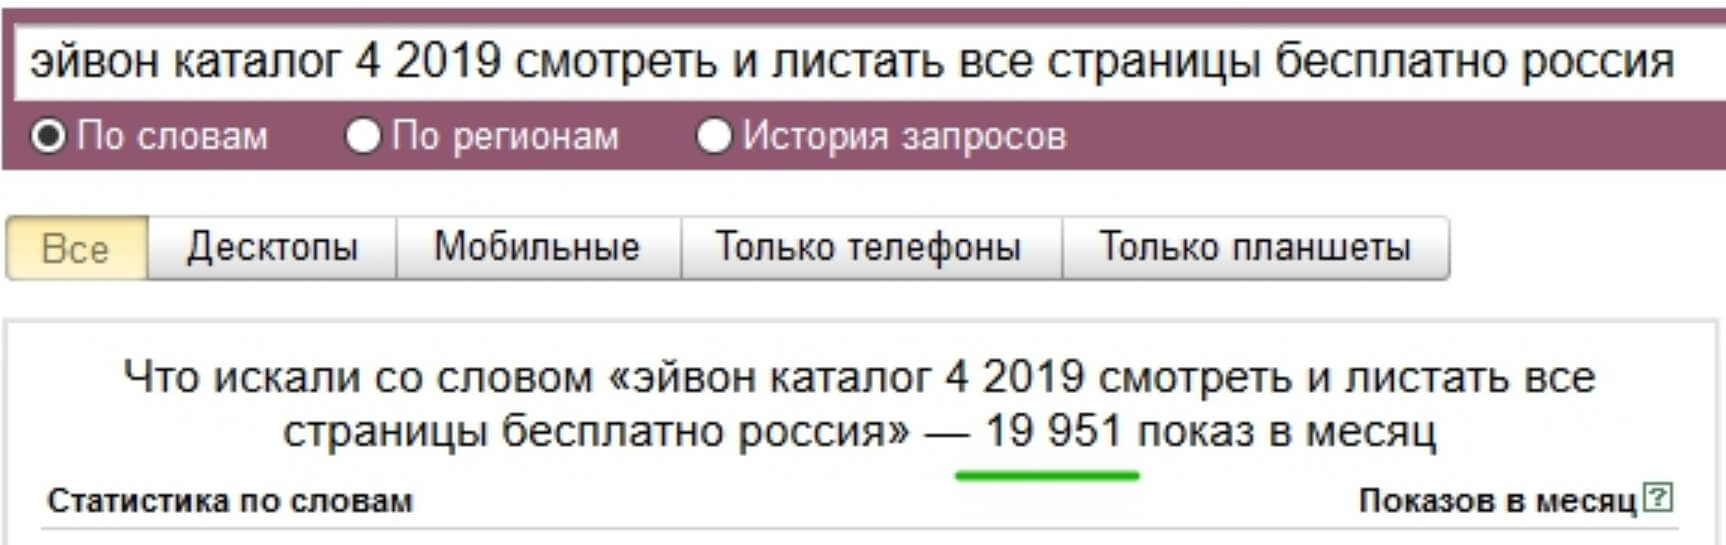 Накрутка подсказок в Яндексе